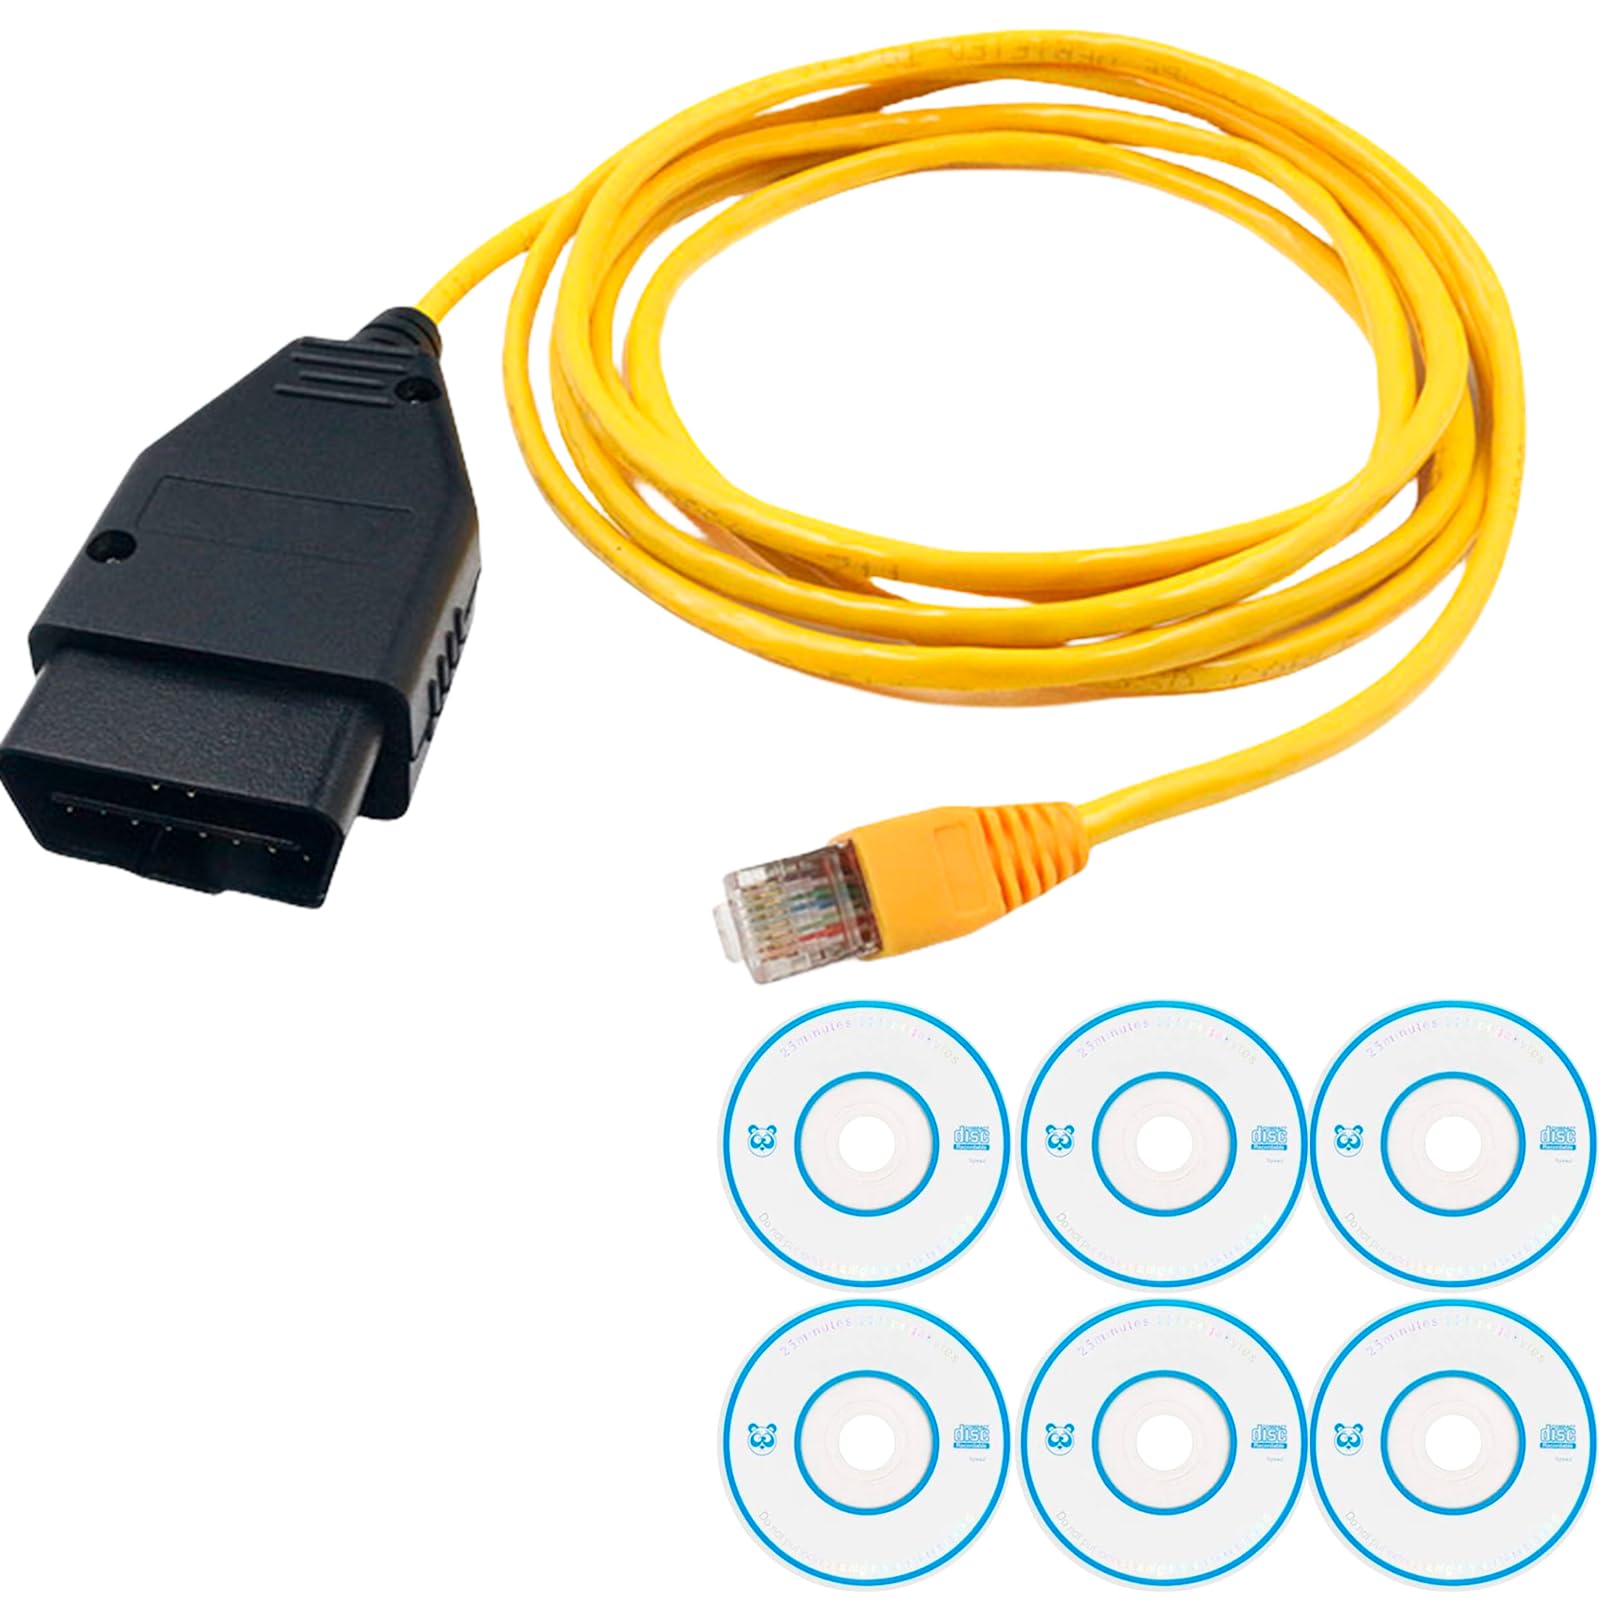 SPORWAY ENET OBD2 Kabel: Ethernet Cable Adapter mit CD für BMW, V50.2 V50.3 Verlängerungskabel Kabel RJ45 Adapter für BMW F-Serie, den neuen 1er, 3er, 5er, 7er GT X3 von SPORWAY